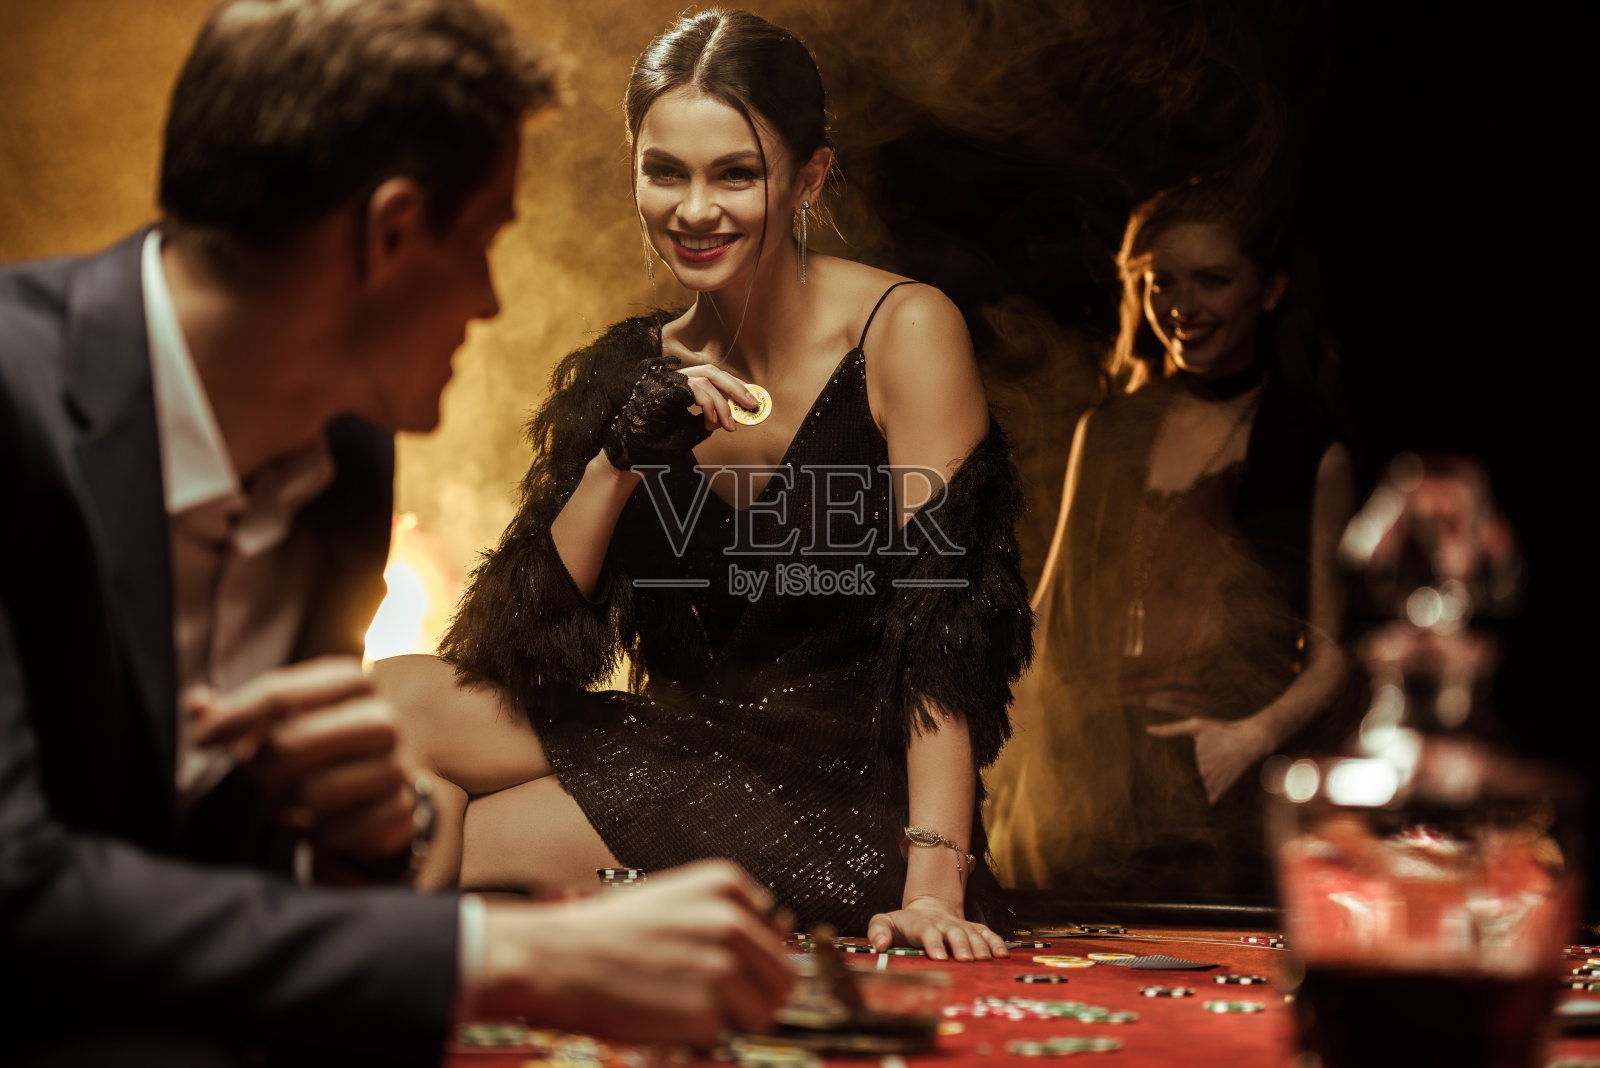 一个笑容灿烂的女人坐在赌桌上拿着赌场筹码照片摄影图片